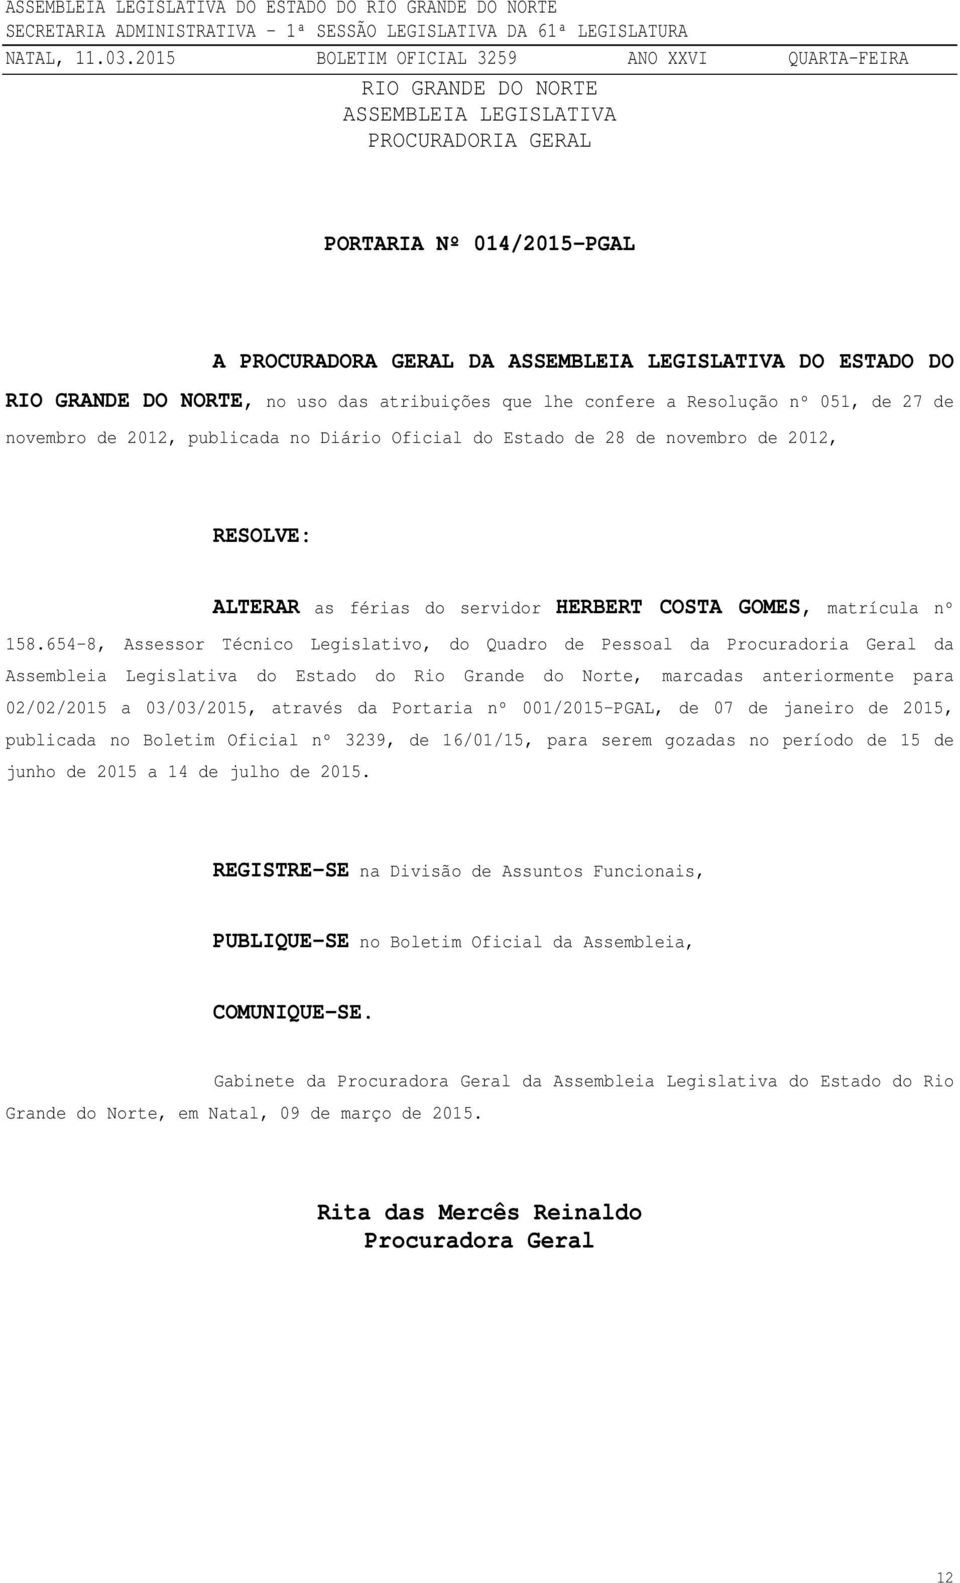 654-8, Assessor Técnico Legislativo, do Quadro de Pessoal da Procuradoria Geral da Assembleia Legislativa do Estado do Rio Grande do Norte, marcadas anteriormente para 02/02/2015 a 03/03/2015,